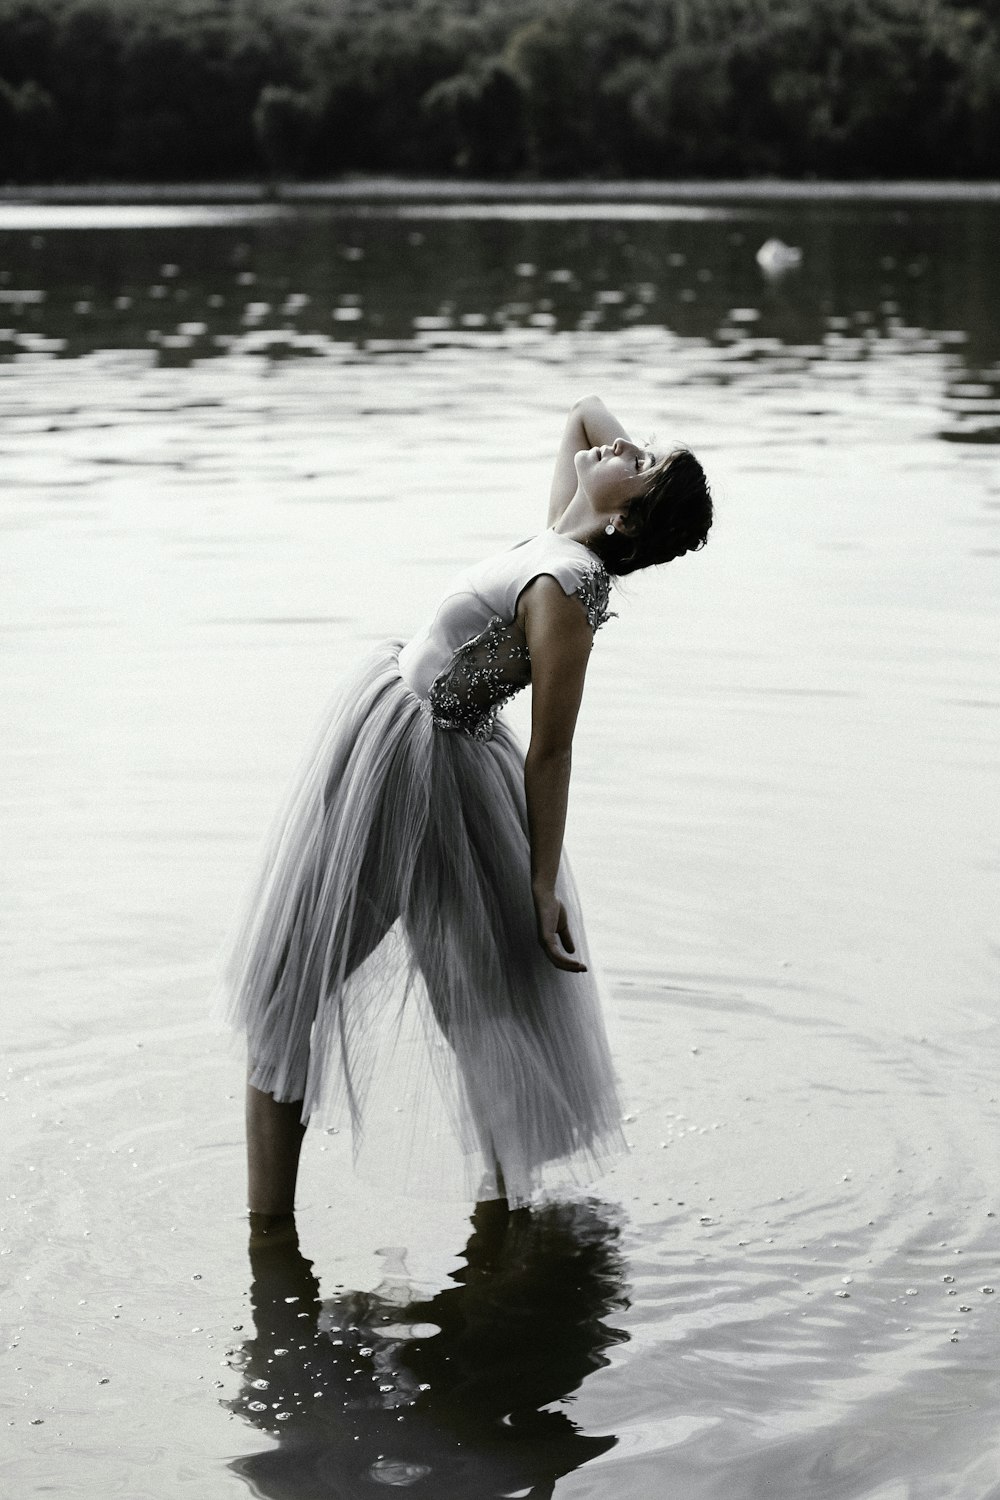 浅瀬の上に立つ灰色のドレスを着た女性